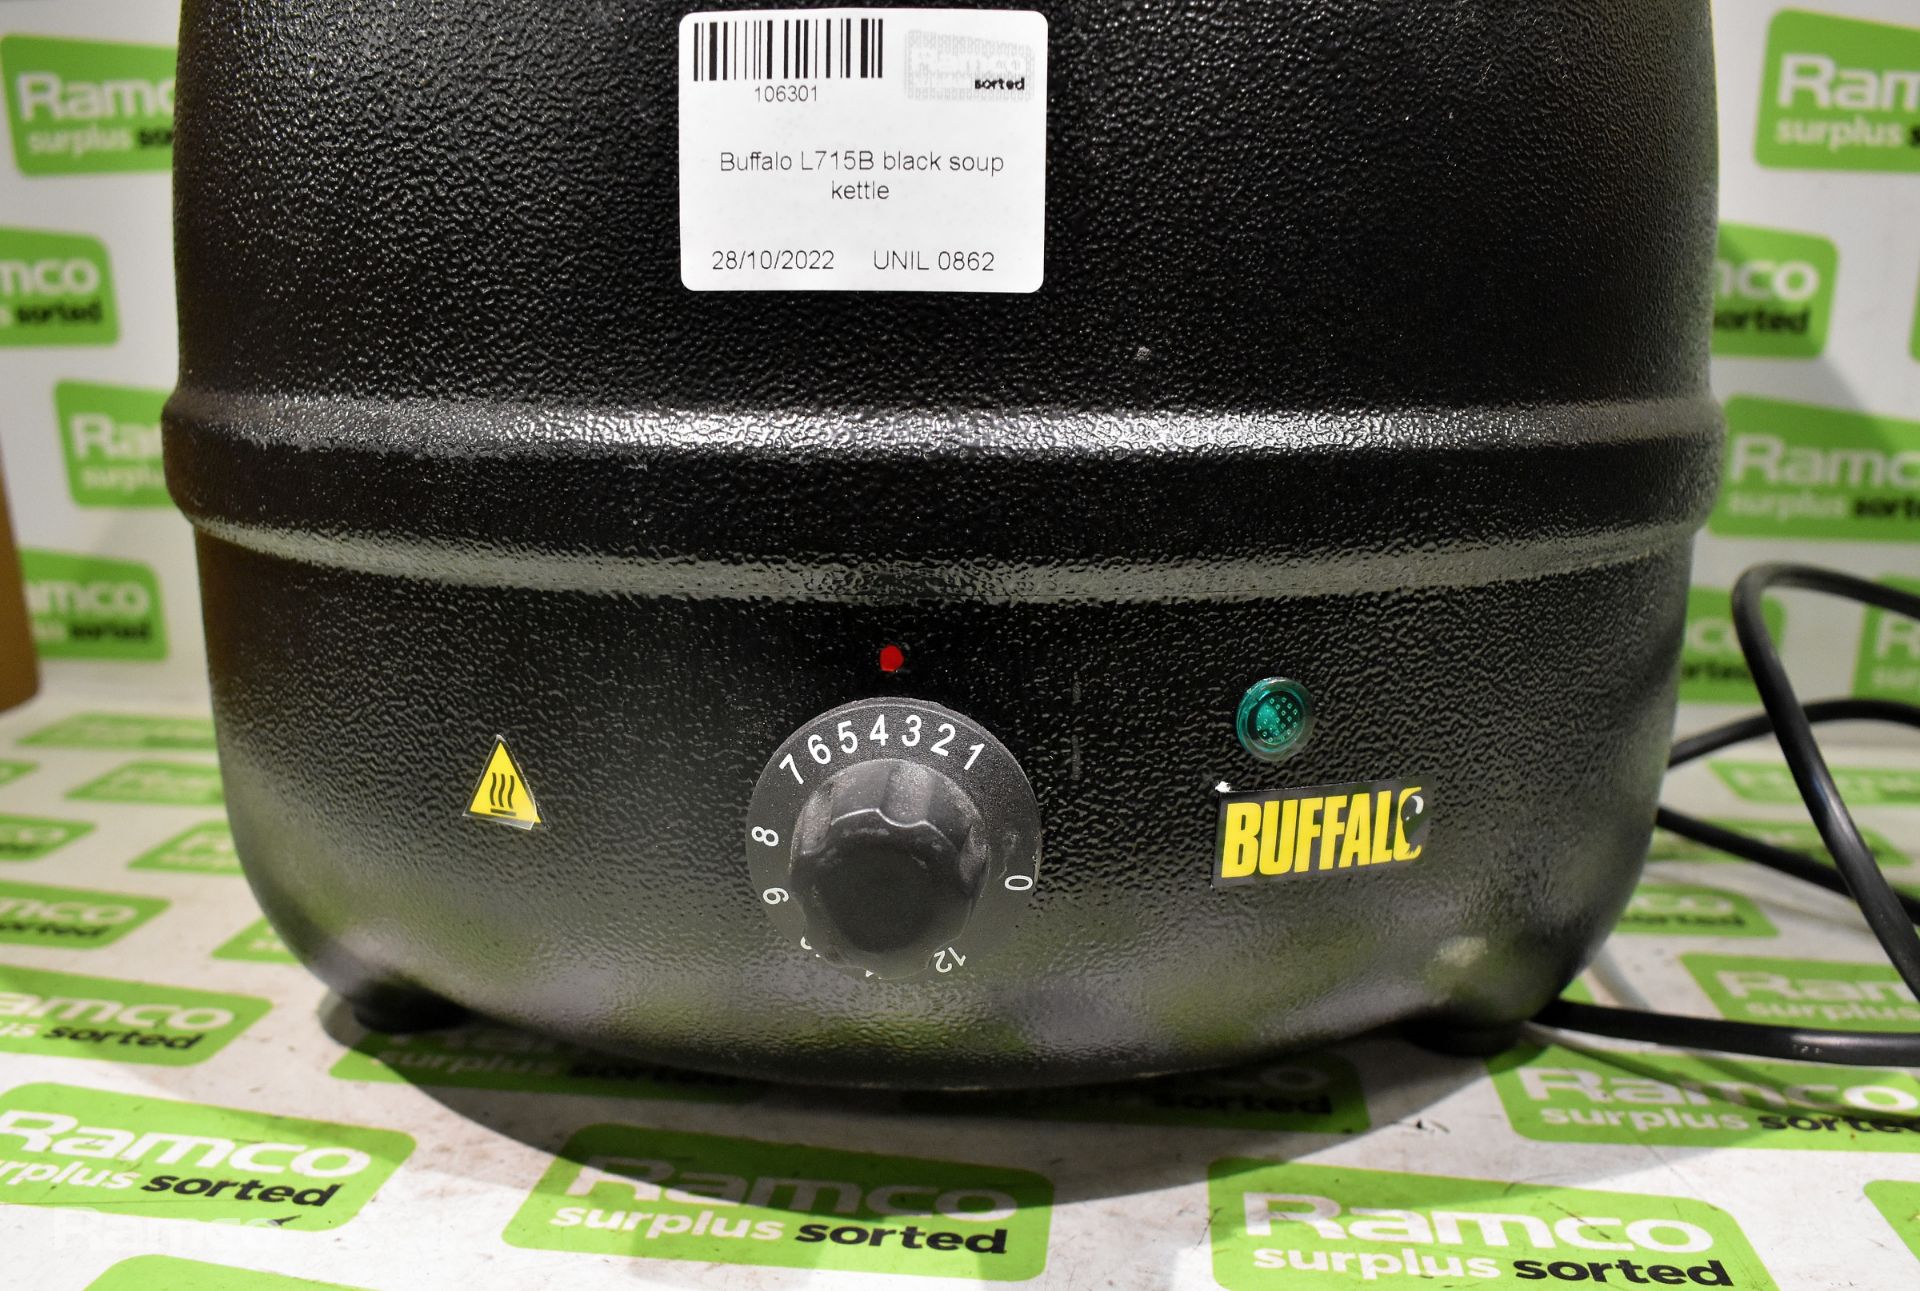 Buffalo L715B black soup kettle - Image 4 of 4